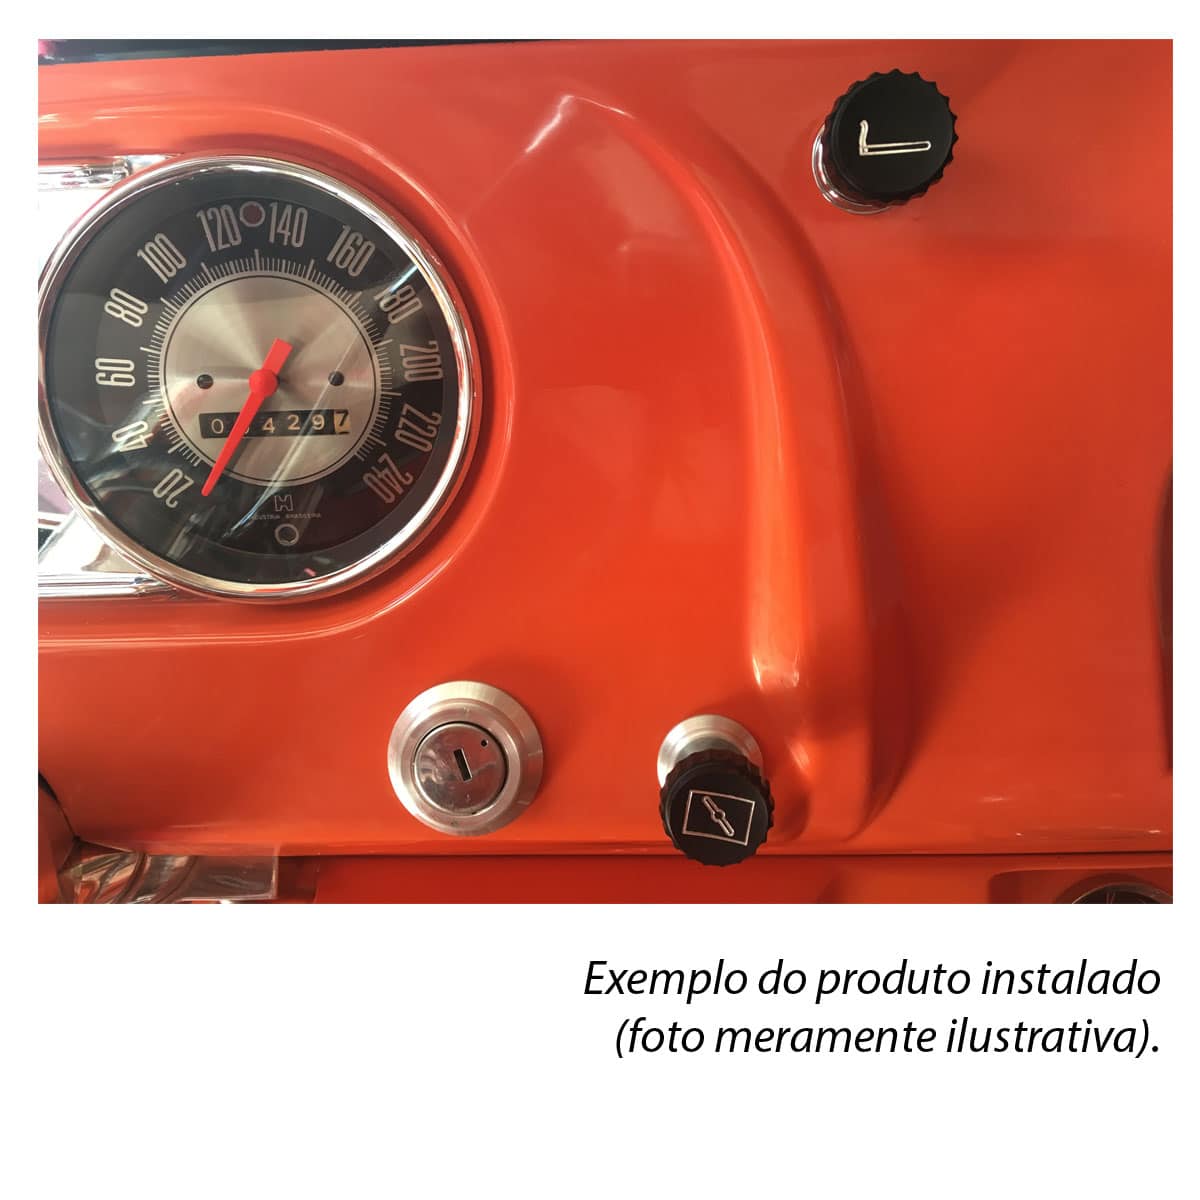 Jogo Botão Original Painel Chevrolet Veraneio C10